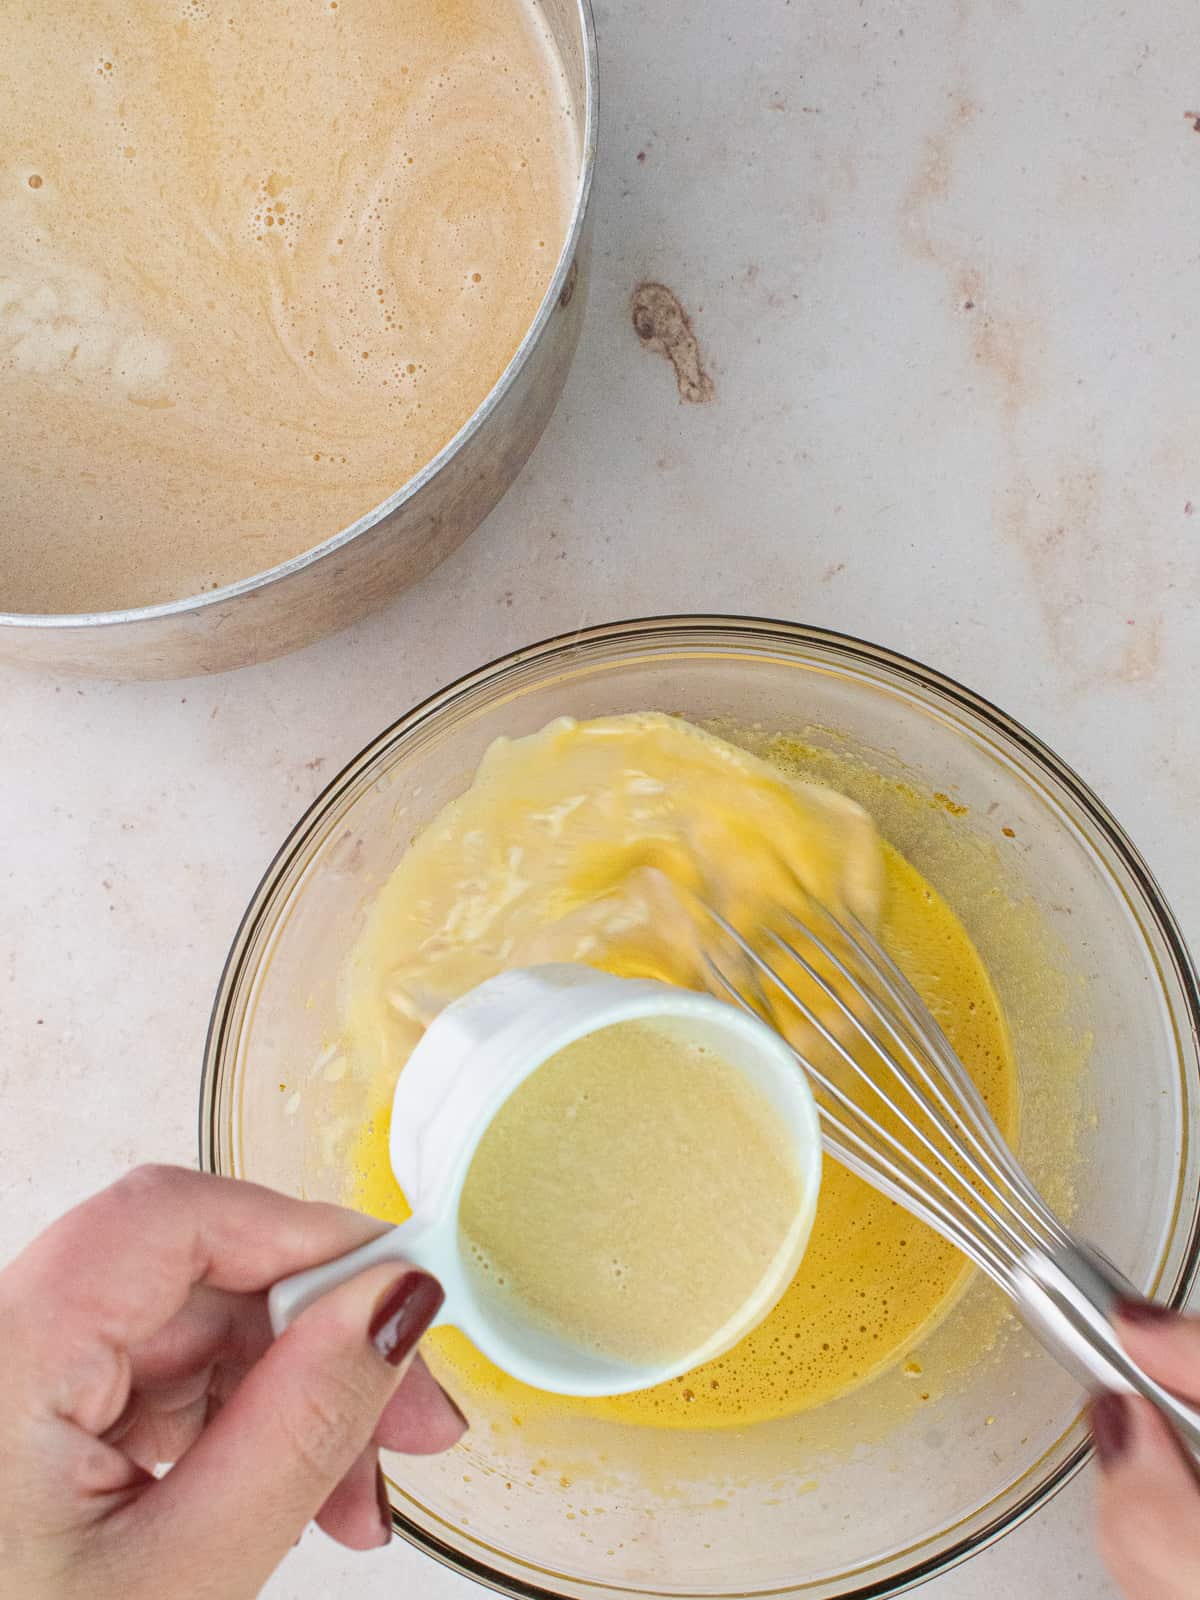 pouring hot cream into egg yolk mixture